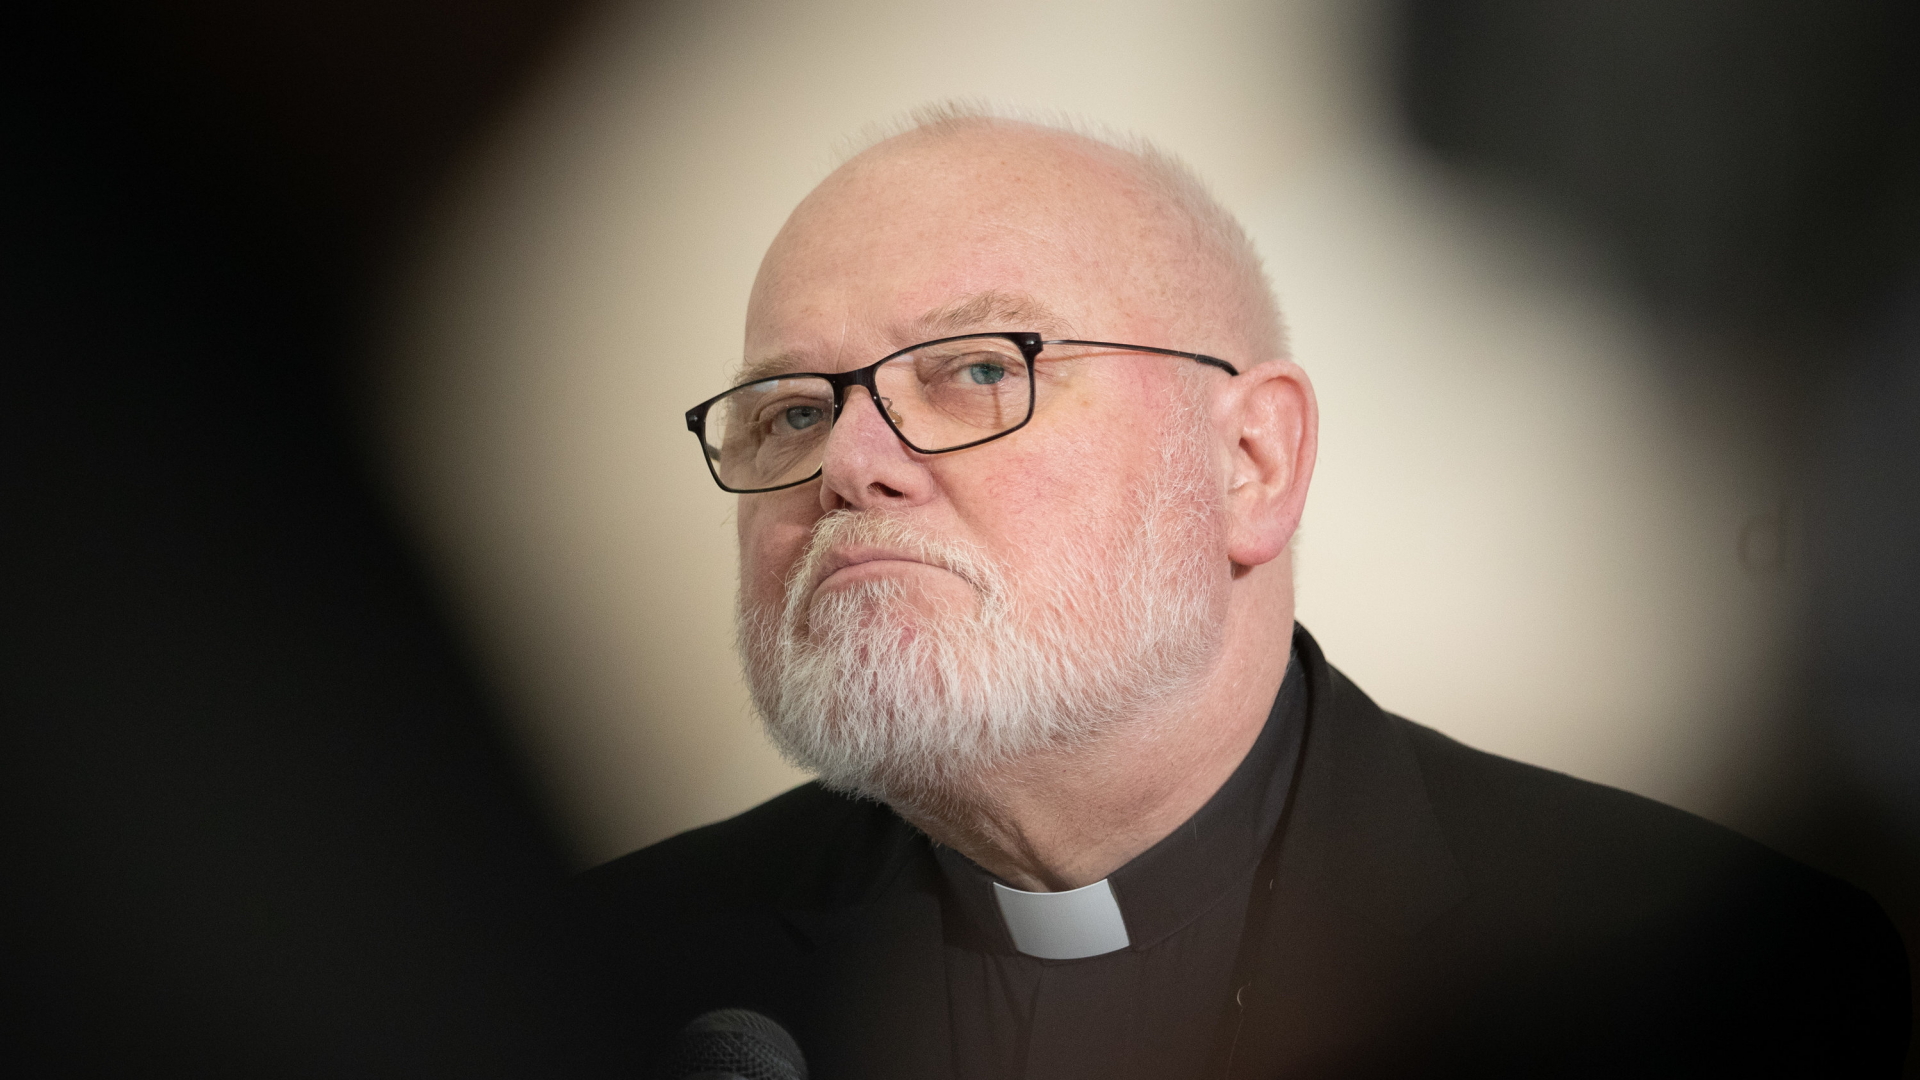  Erzbischof Reinhard Kardinal Marx spricht zum Auftakt der Frühjahrsvollversammlung der Deutschen Bischofskonferenz bei einer Pressekonferenz. | dpa